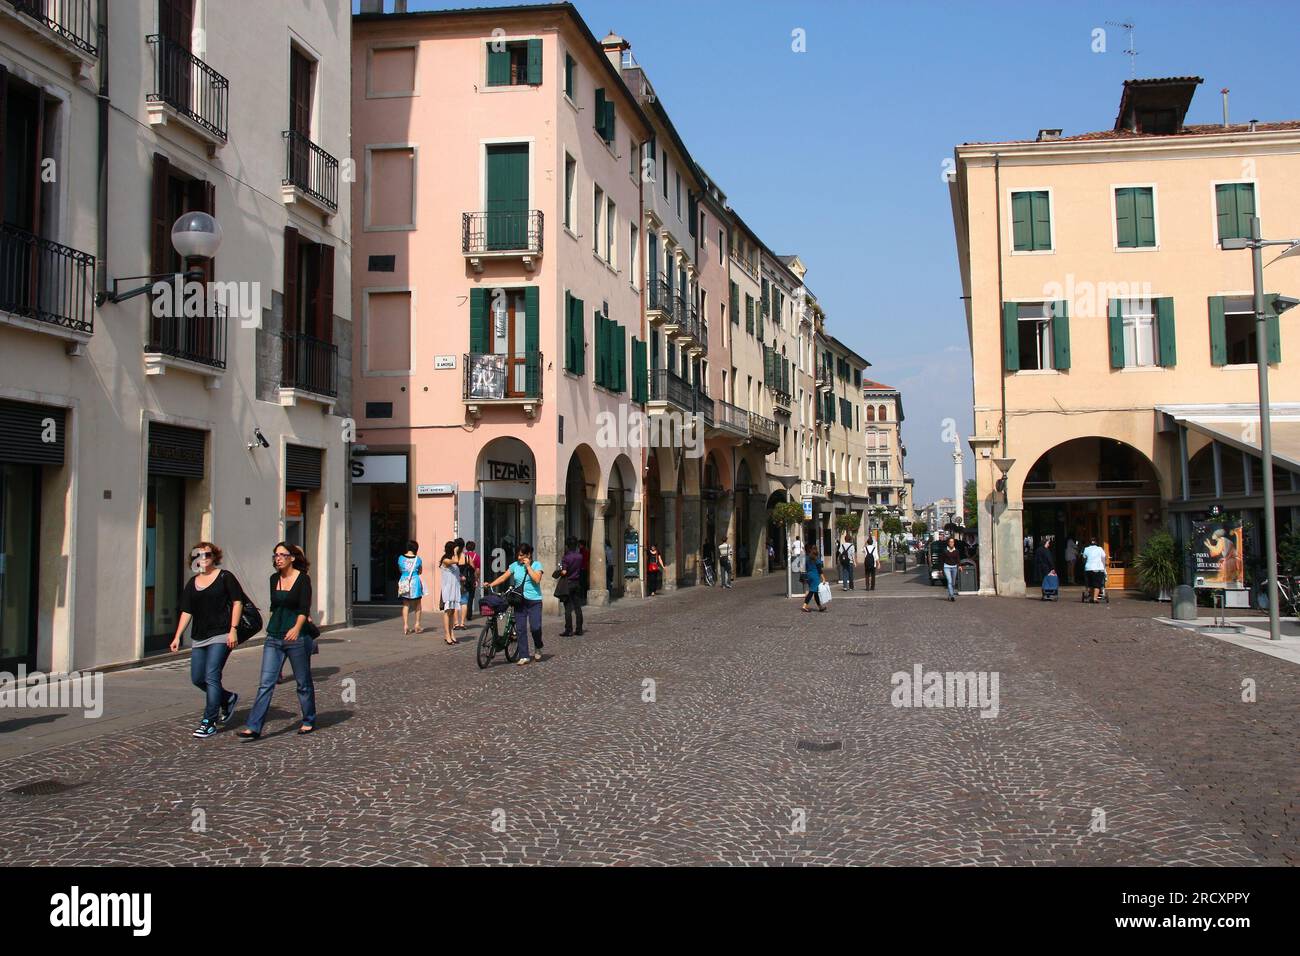 PADOVA, ITALIA - 17 SETTEMBRE 2009: Vista sulla strada di Piazza Cavour a Padova, città principale della regione Veneto. Foto Stock